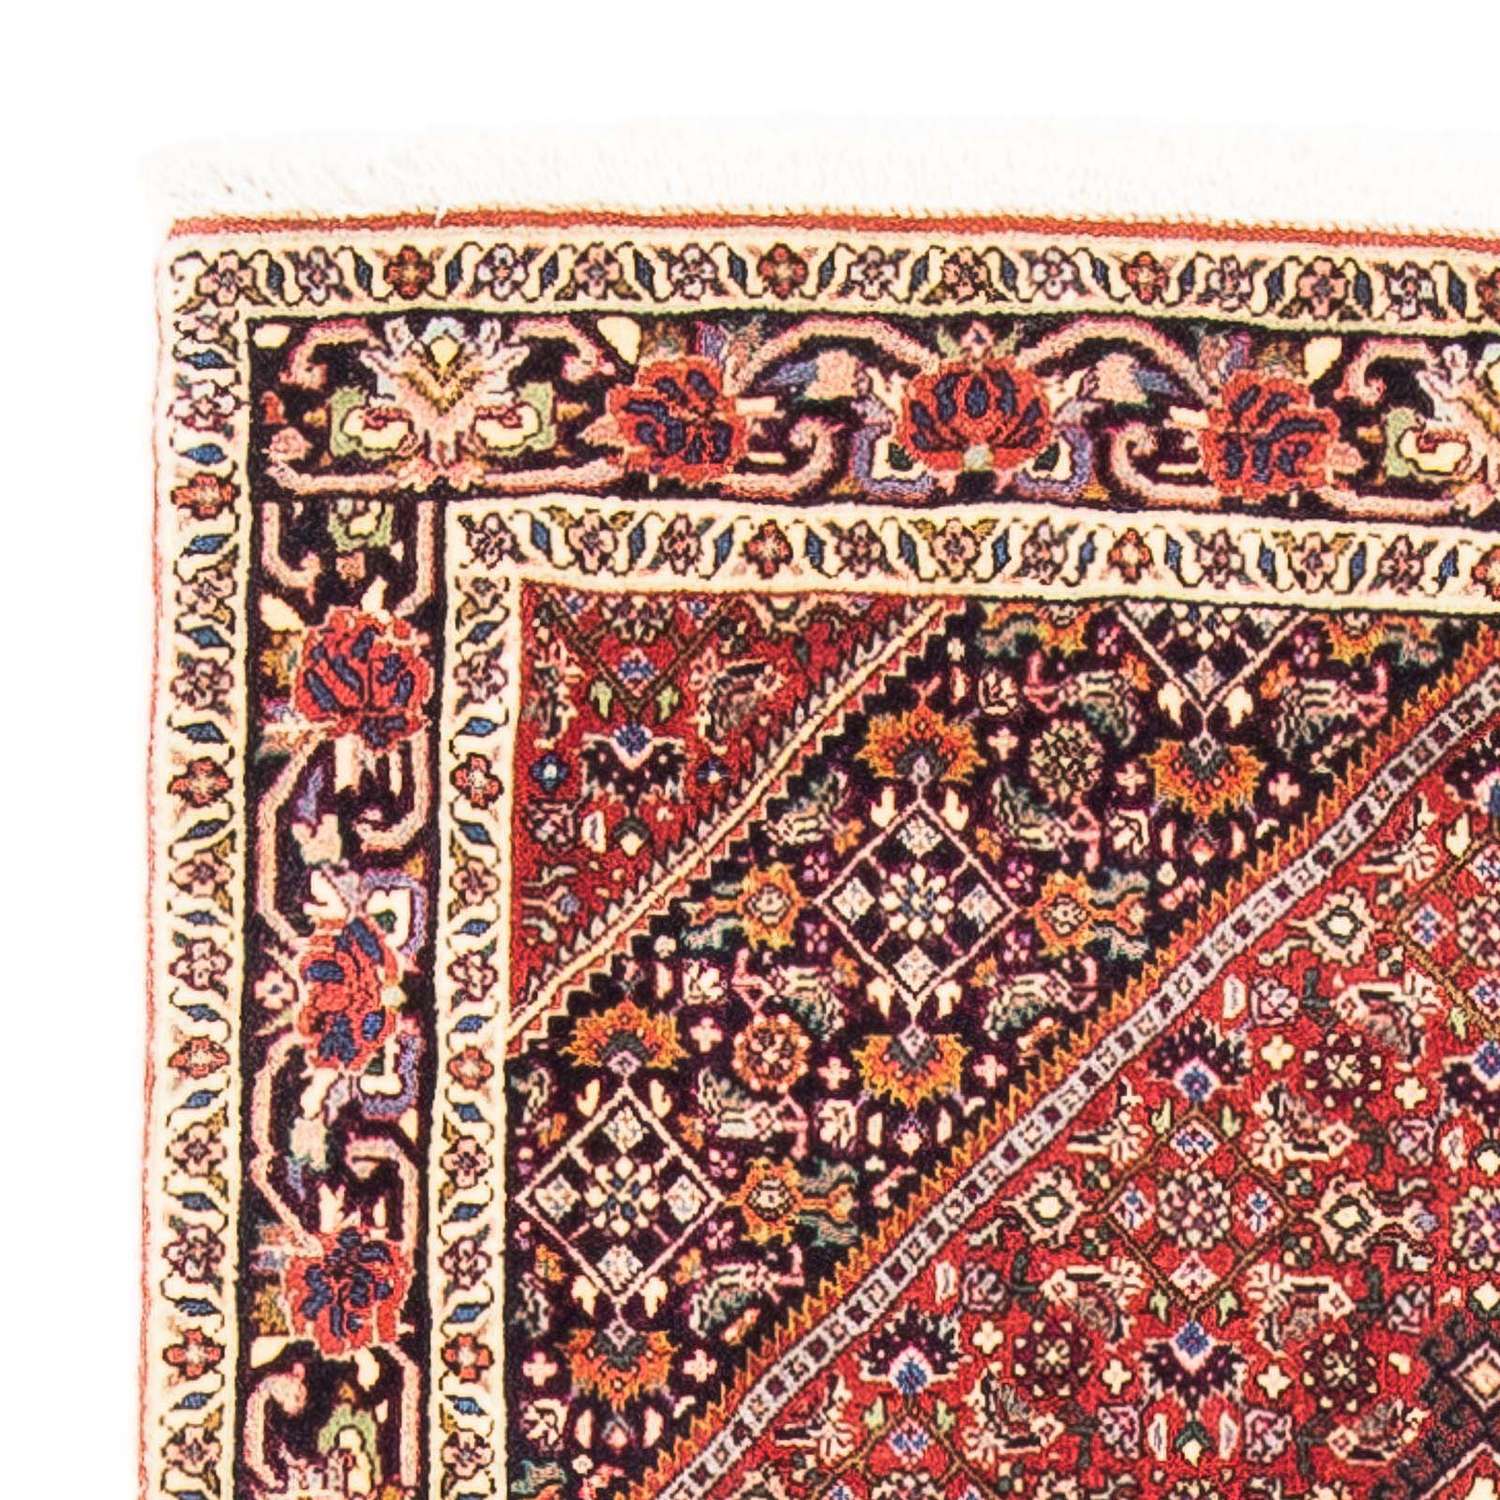 Perzisch tapijt - Bijar - 153 x 90 cm - rood